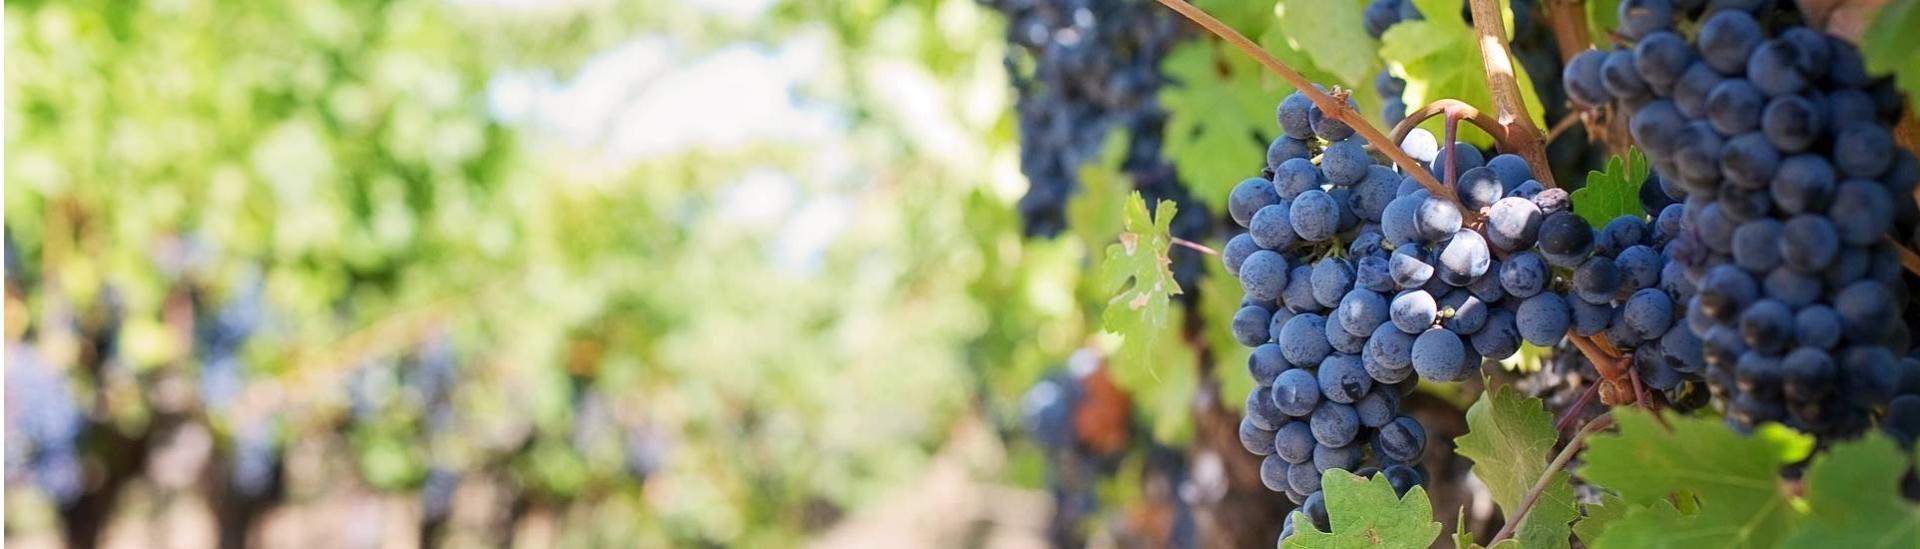 Vigne de l'Aude avec des grappes ensoleillées, un jour d'été